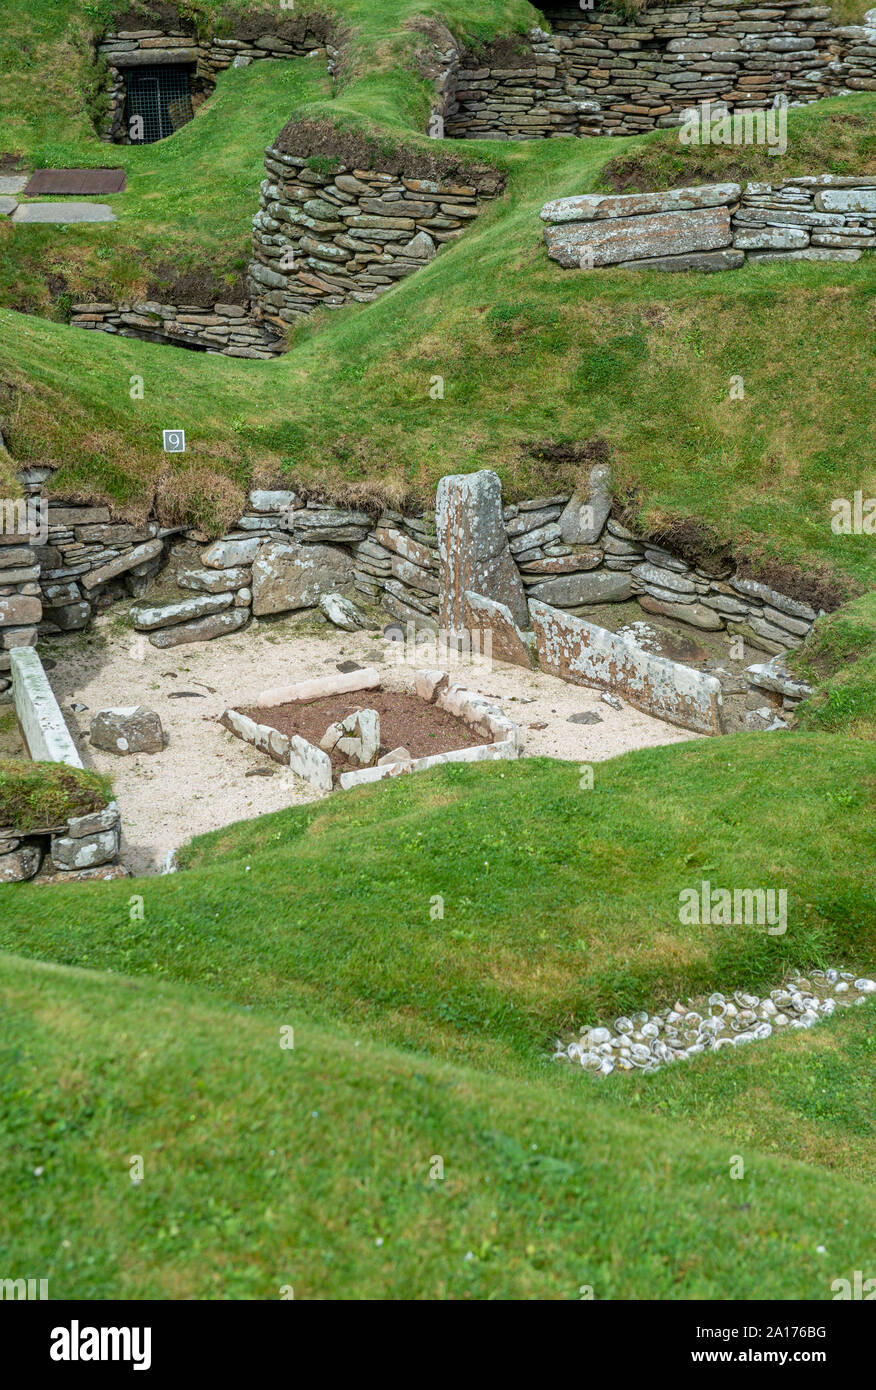 Skara Brae, un village néolithique en pierre situé sur la baie de Skaill sur la côte ouest de l'îles Orcades en Ecosse. Banque D'Images